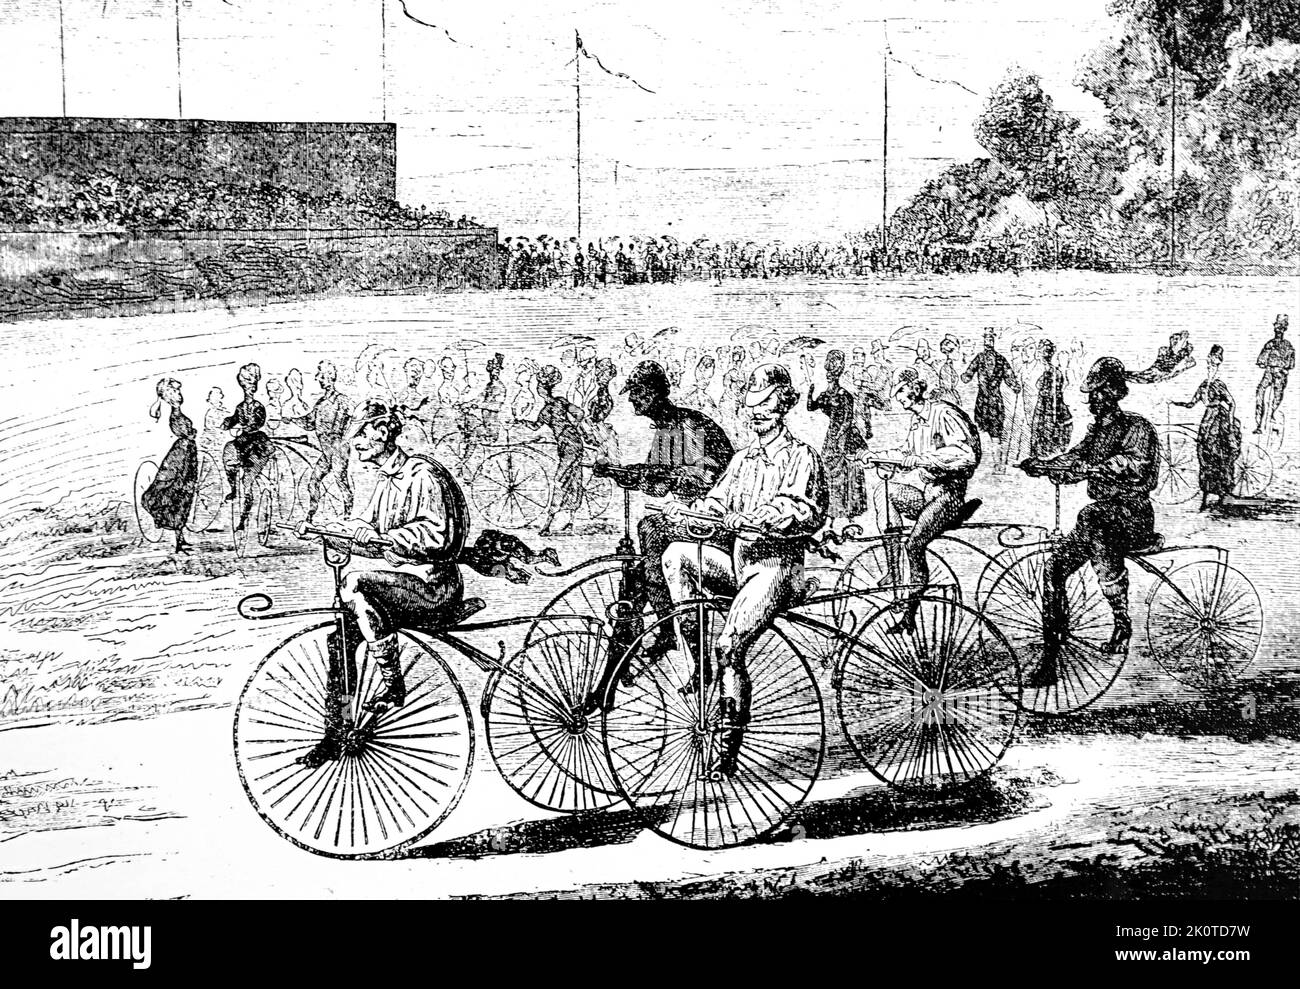 Paris-Rouen Road race, Paris, 1890 après une photo en Velocipede illustré Banque D'Images